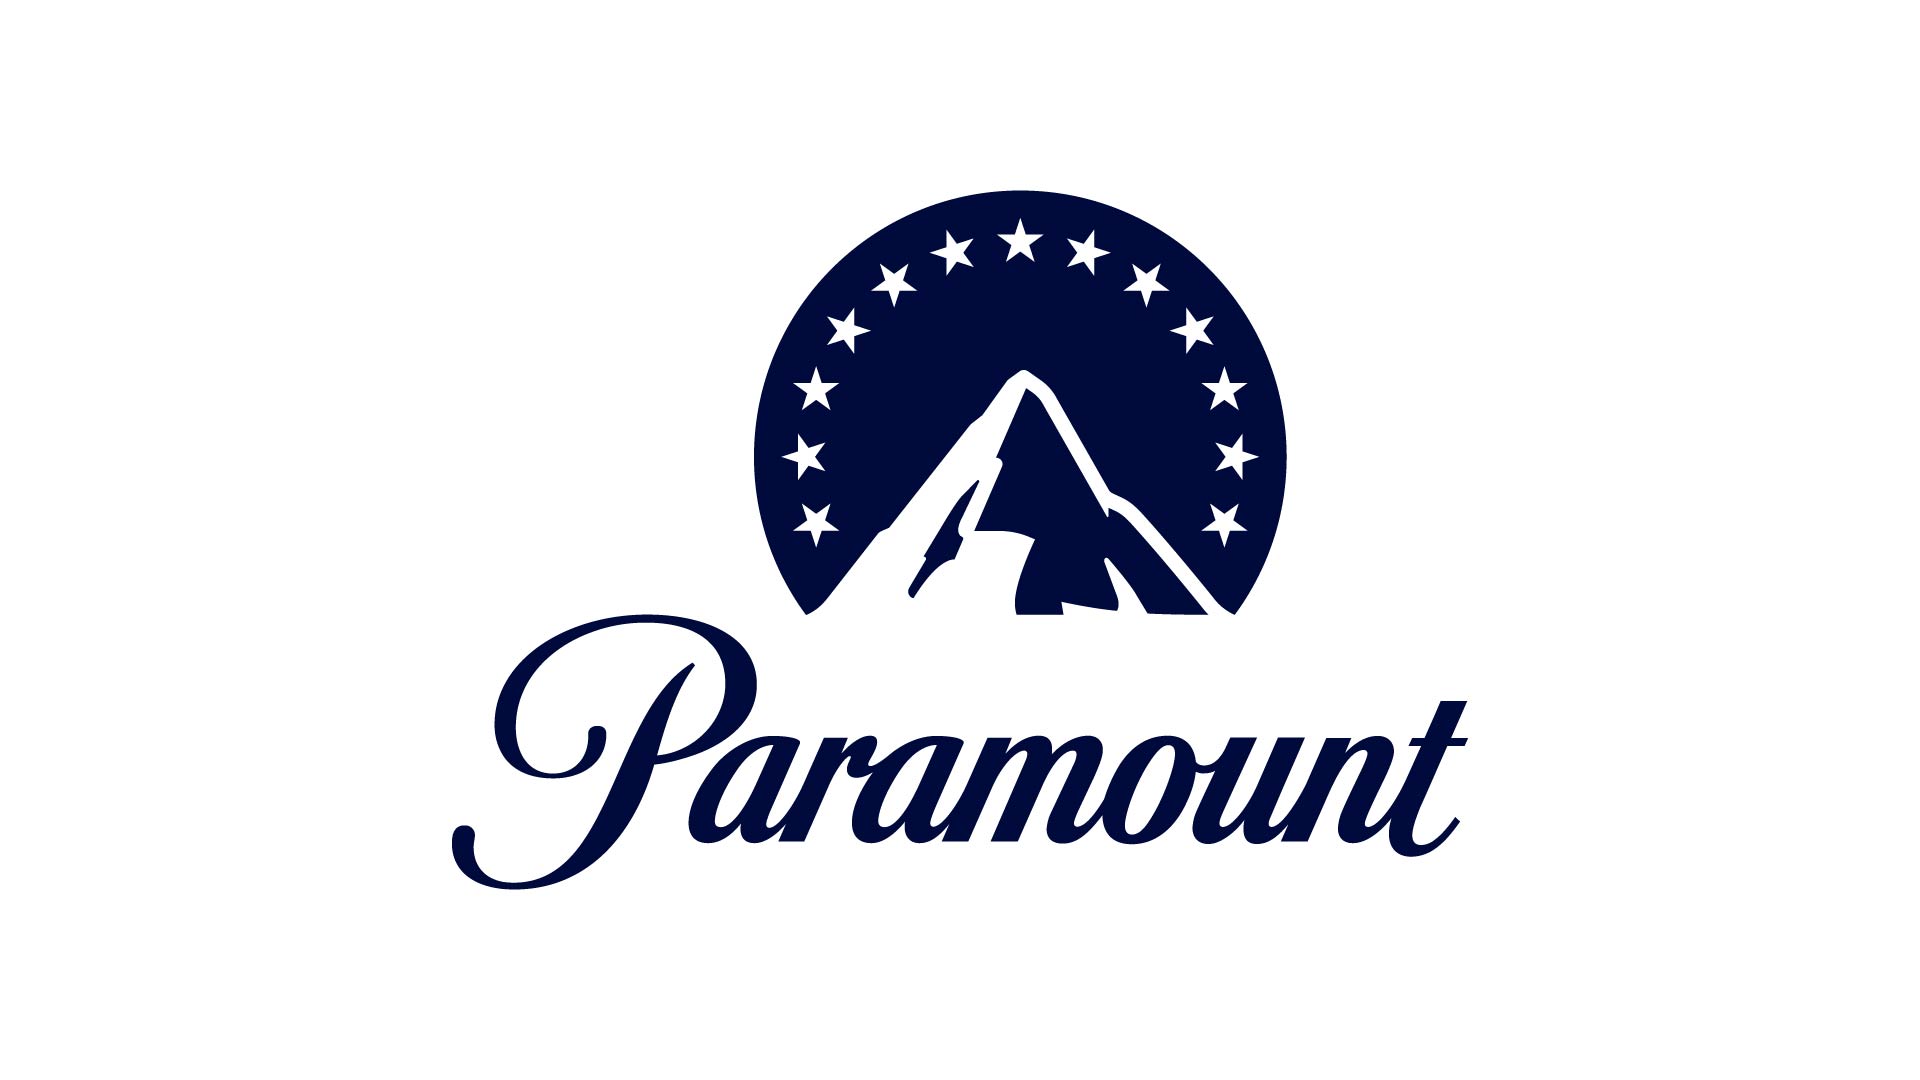 Paramount Static Logos P ICON LOGO BLUE P ICON LOGO BLUE 1 |